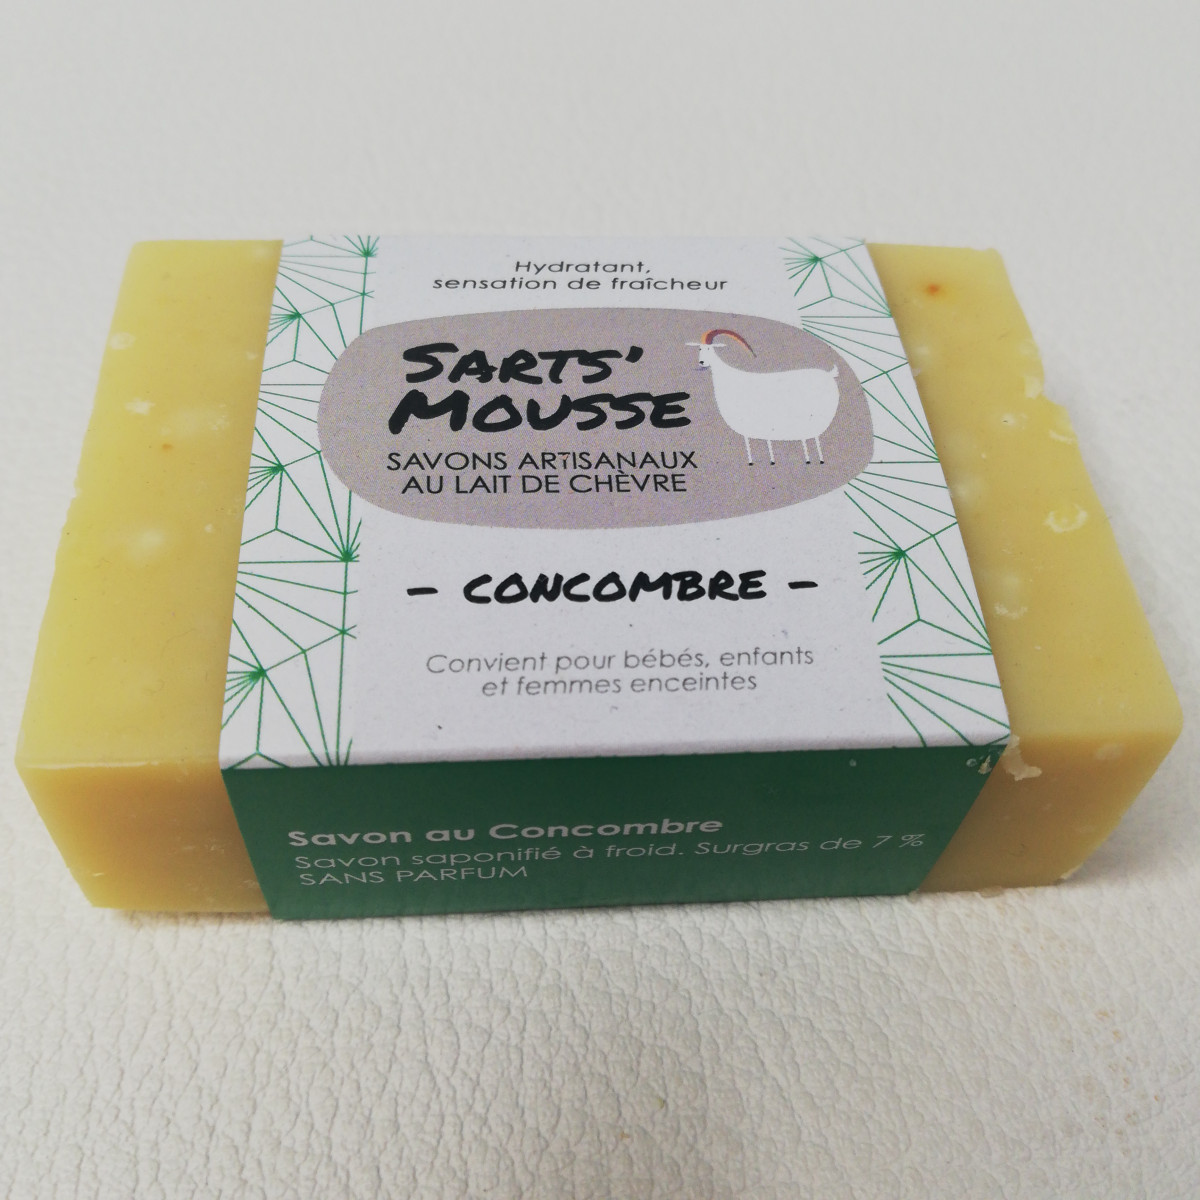 Savon Sart's mousse "Concombre" - photo 6